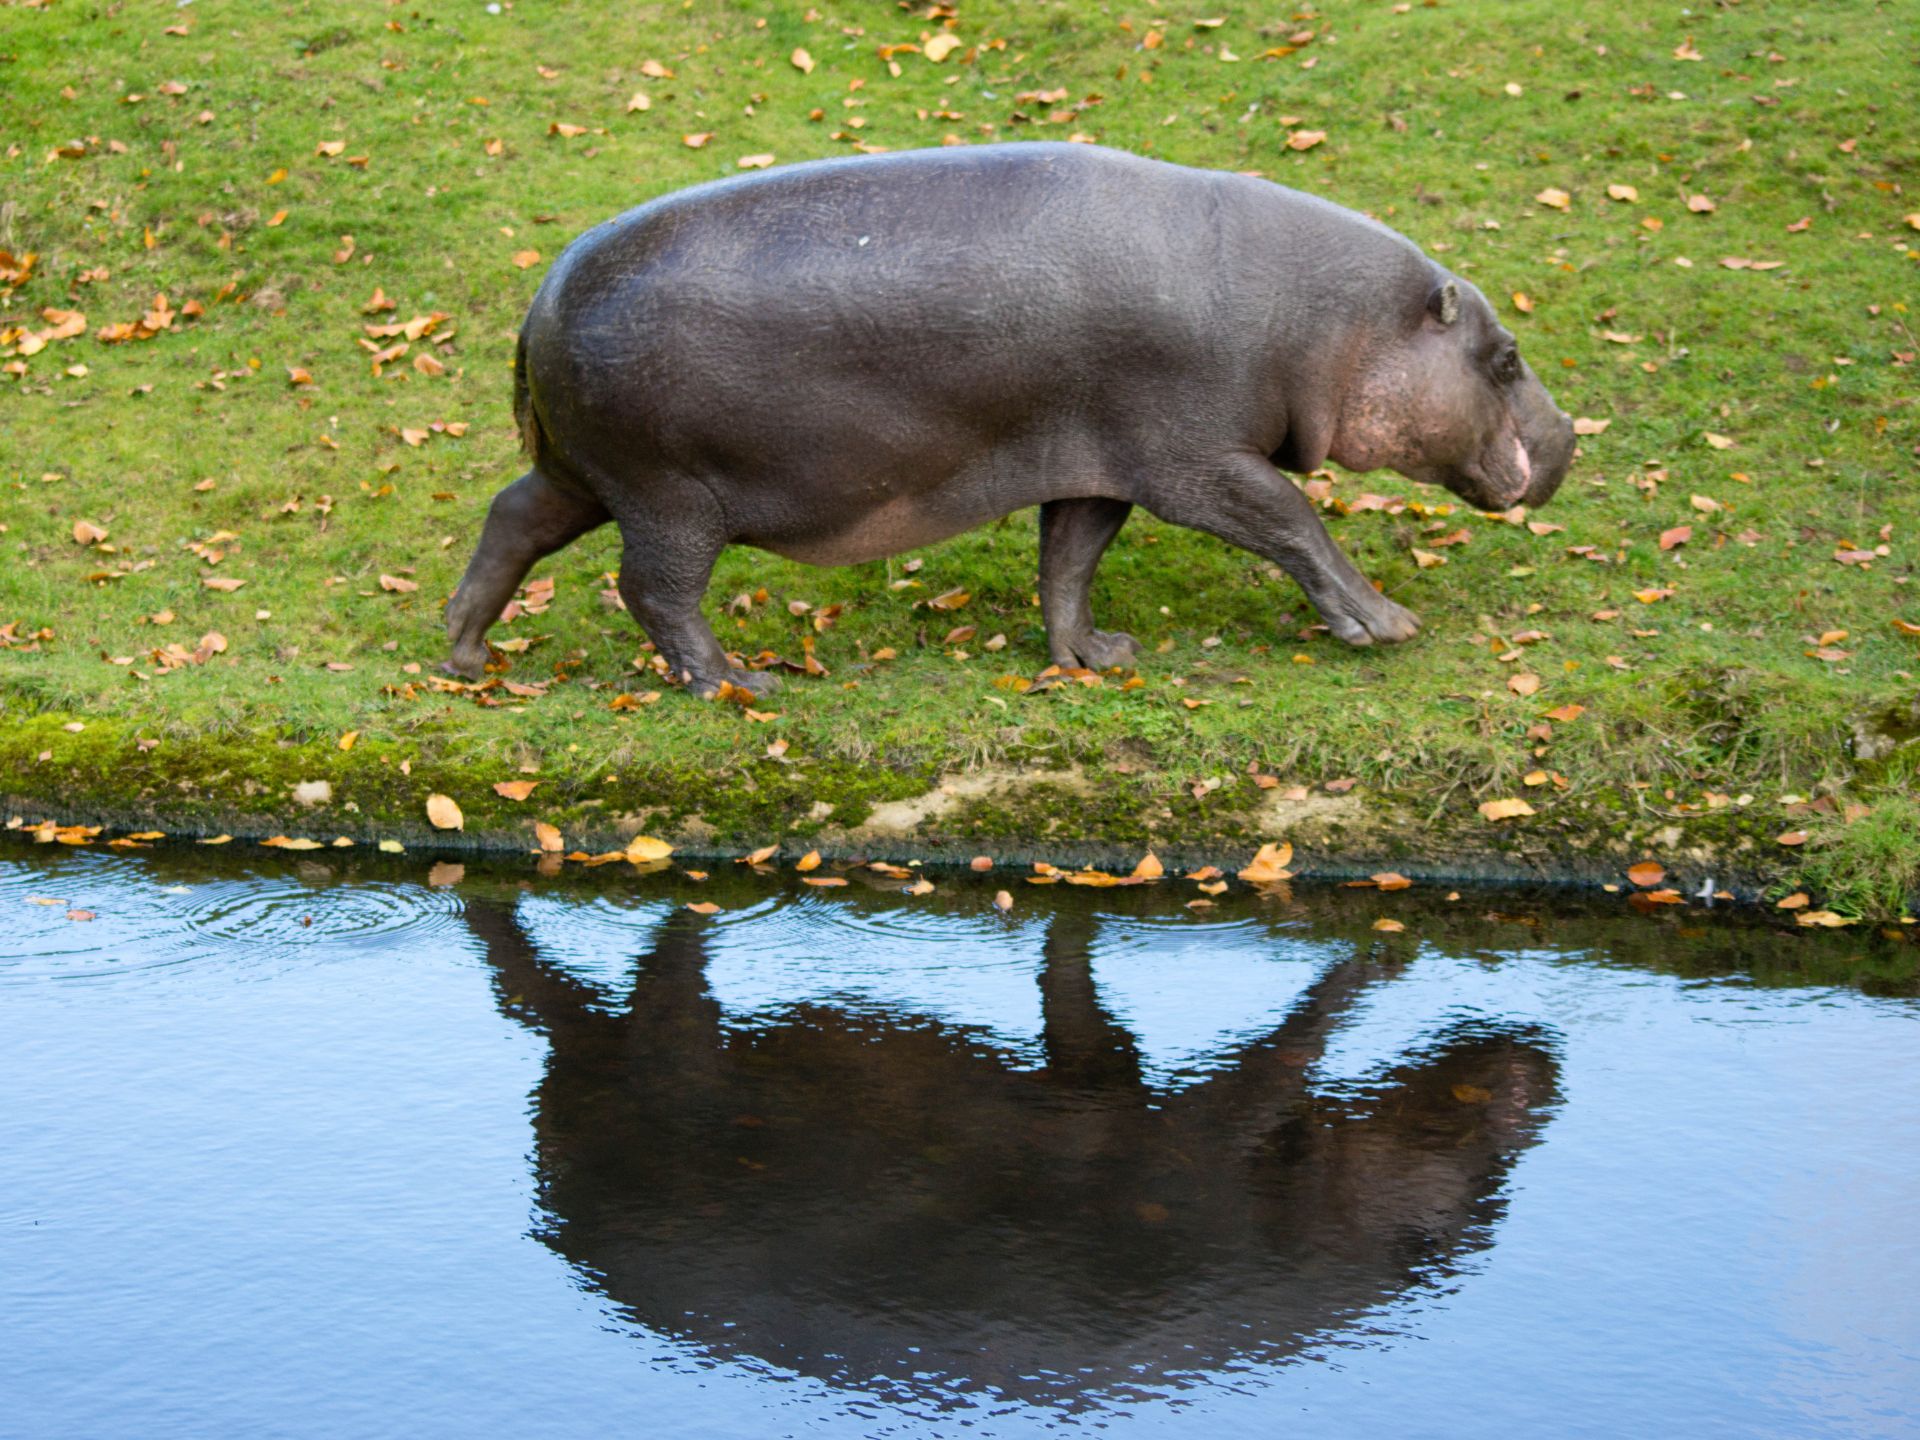 hipopotamos-de-colombia-pablo-escobar-debate-decisiones-ambientales